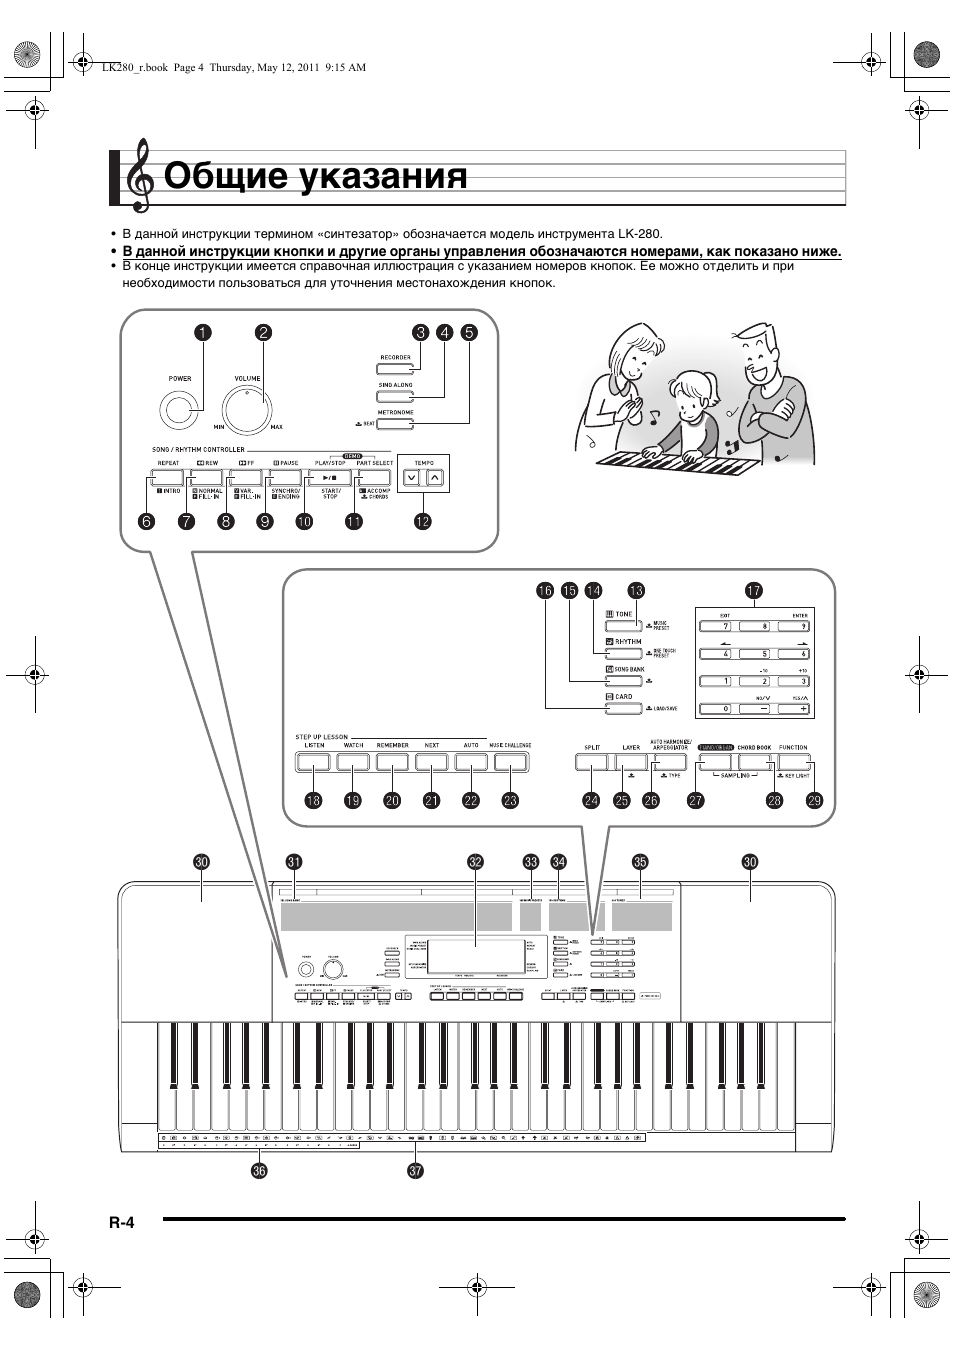 Общие указания | Инструкция по эксплуатации Casio LK-280 | Страница 5 / 75